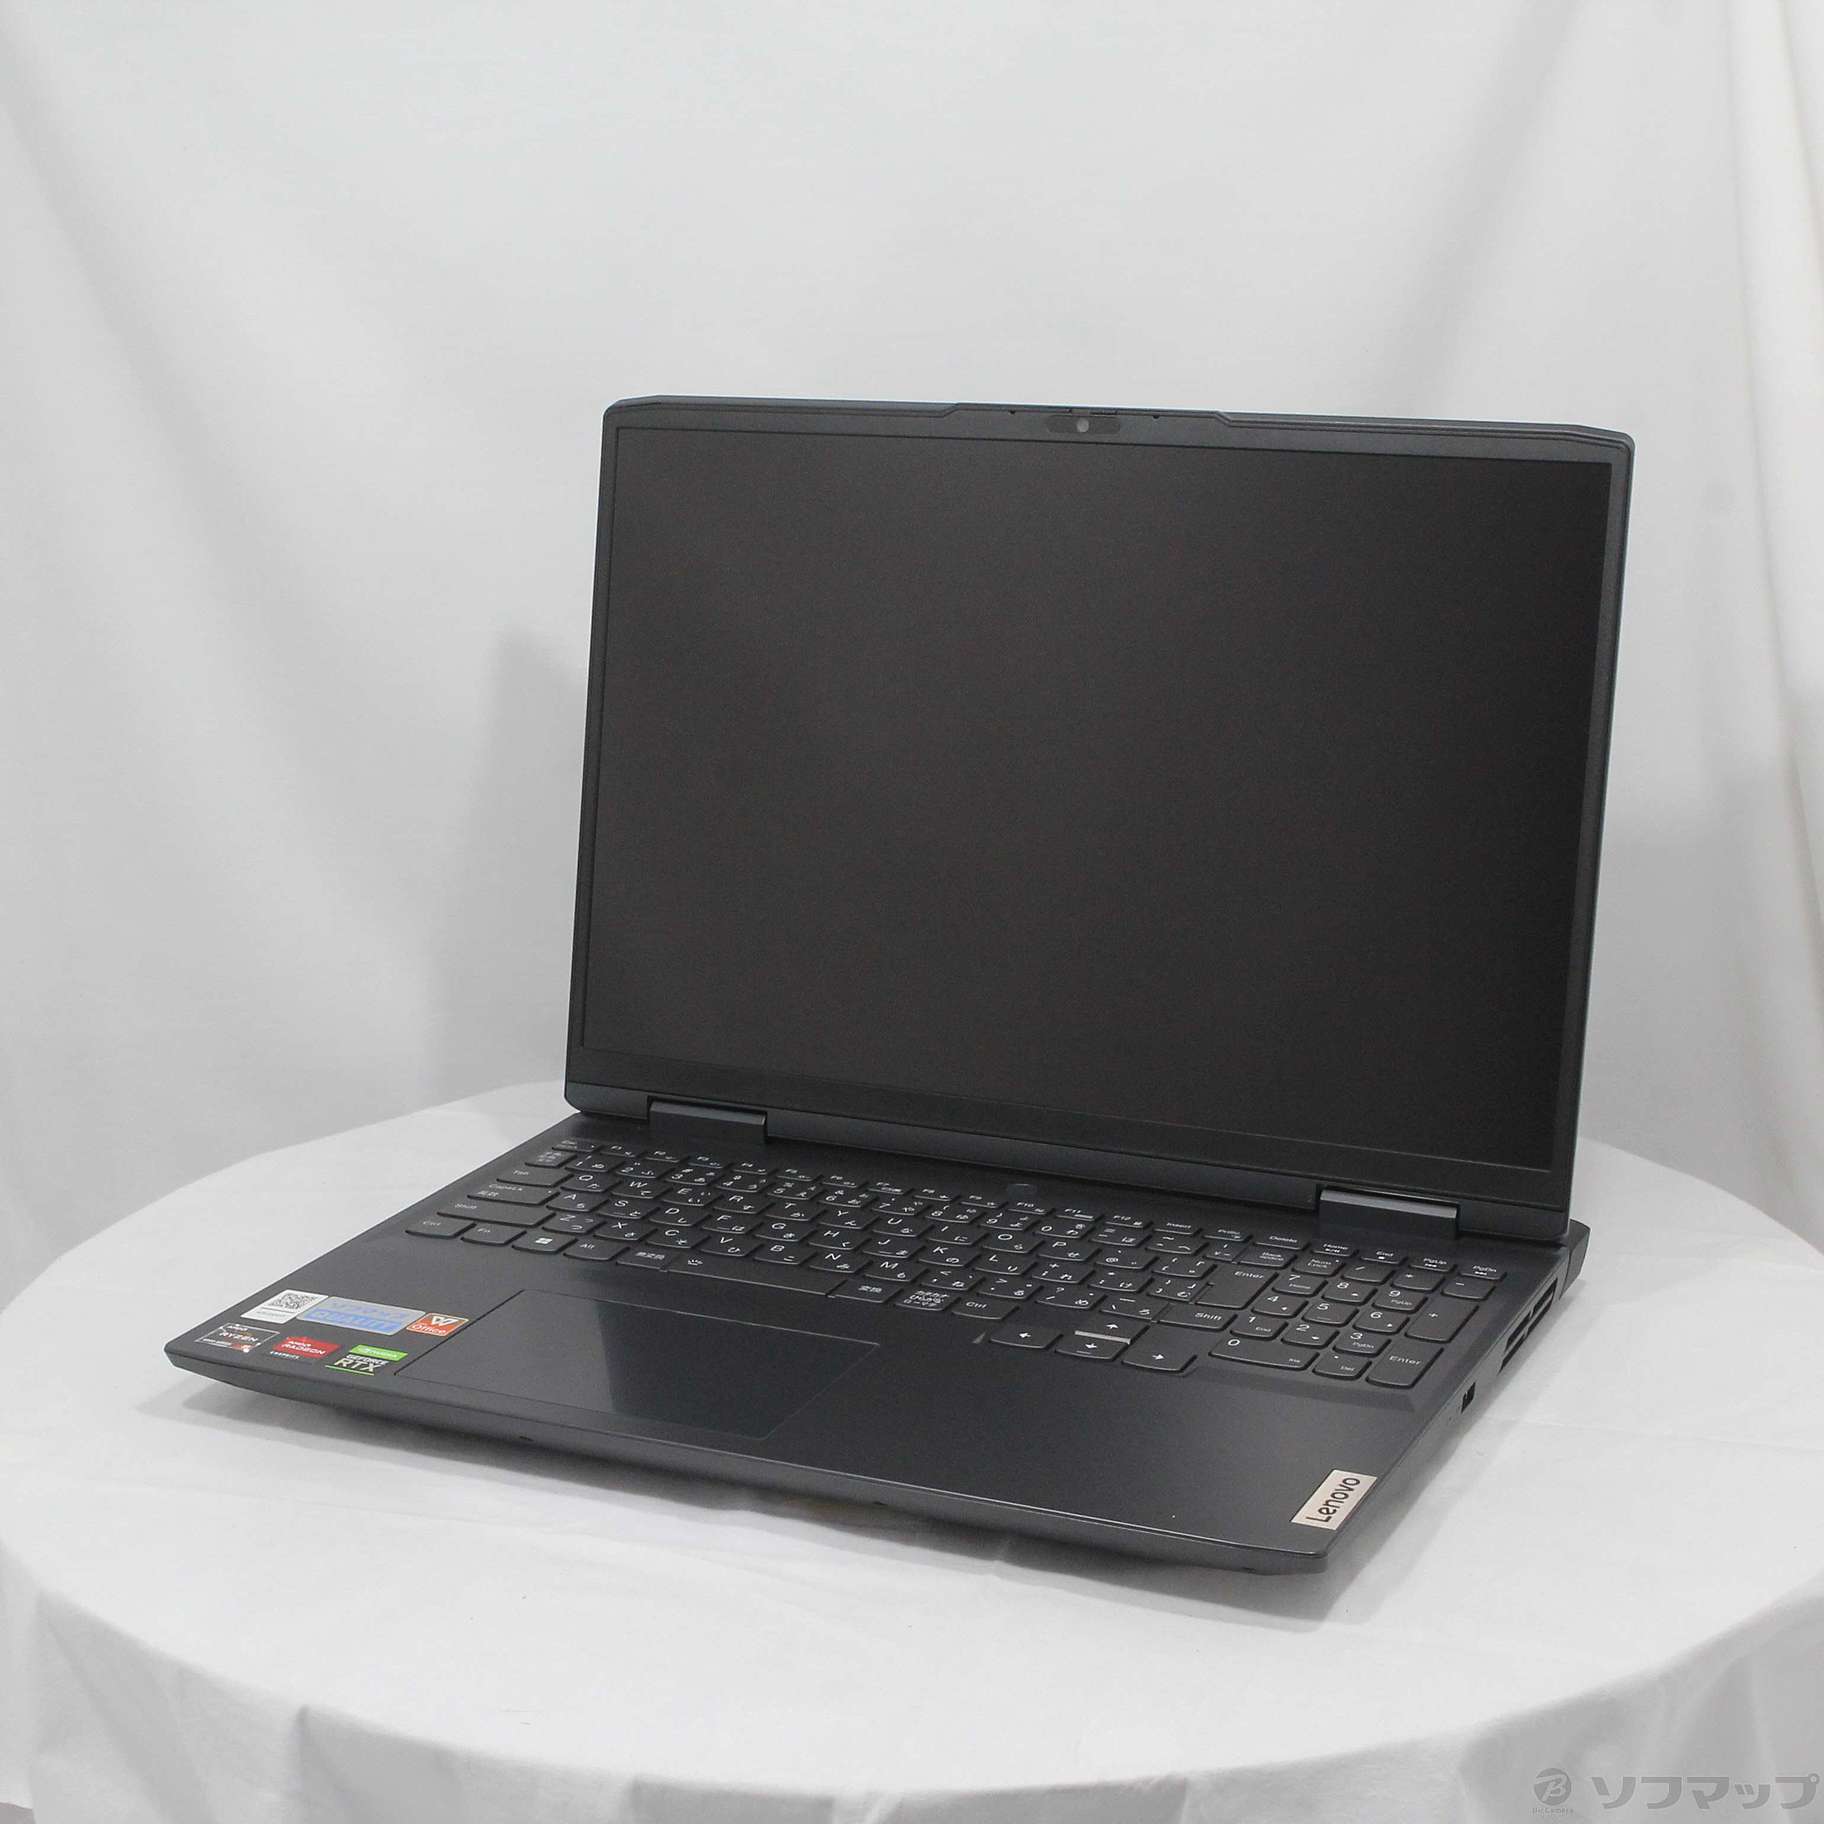 Lenovo IdeaPad Gaming 370 RYZEN5 16GB